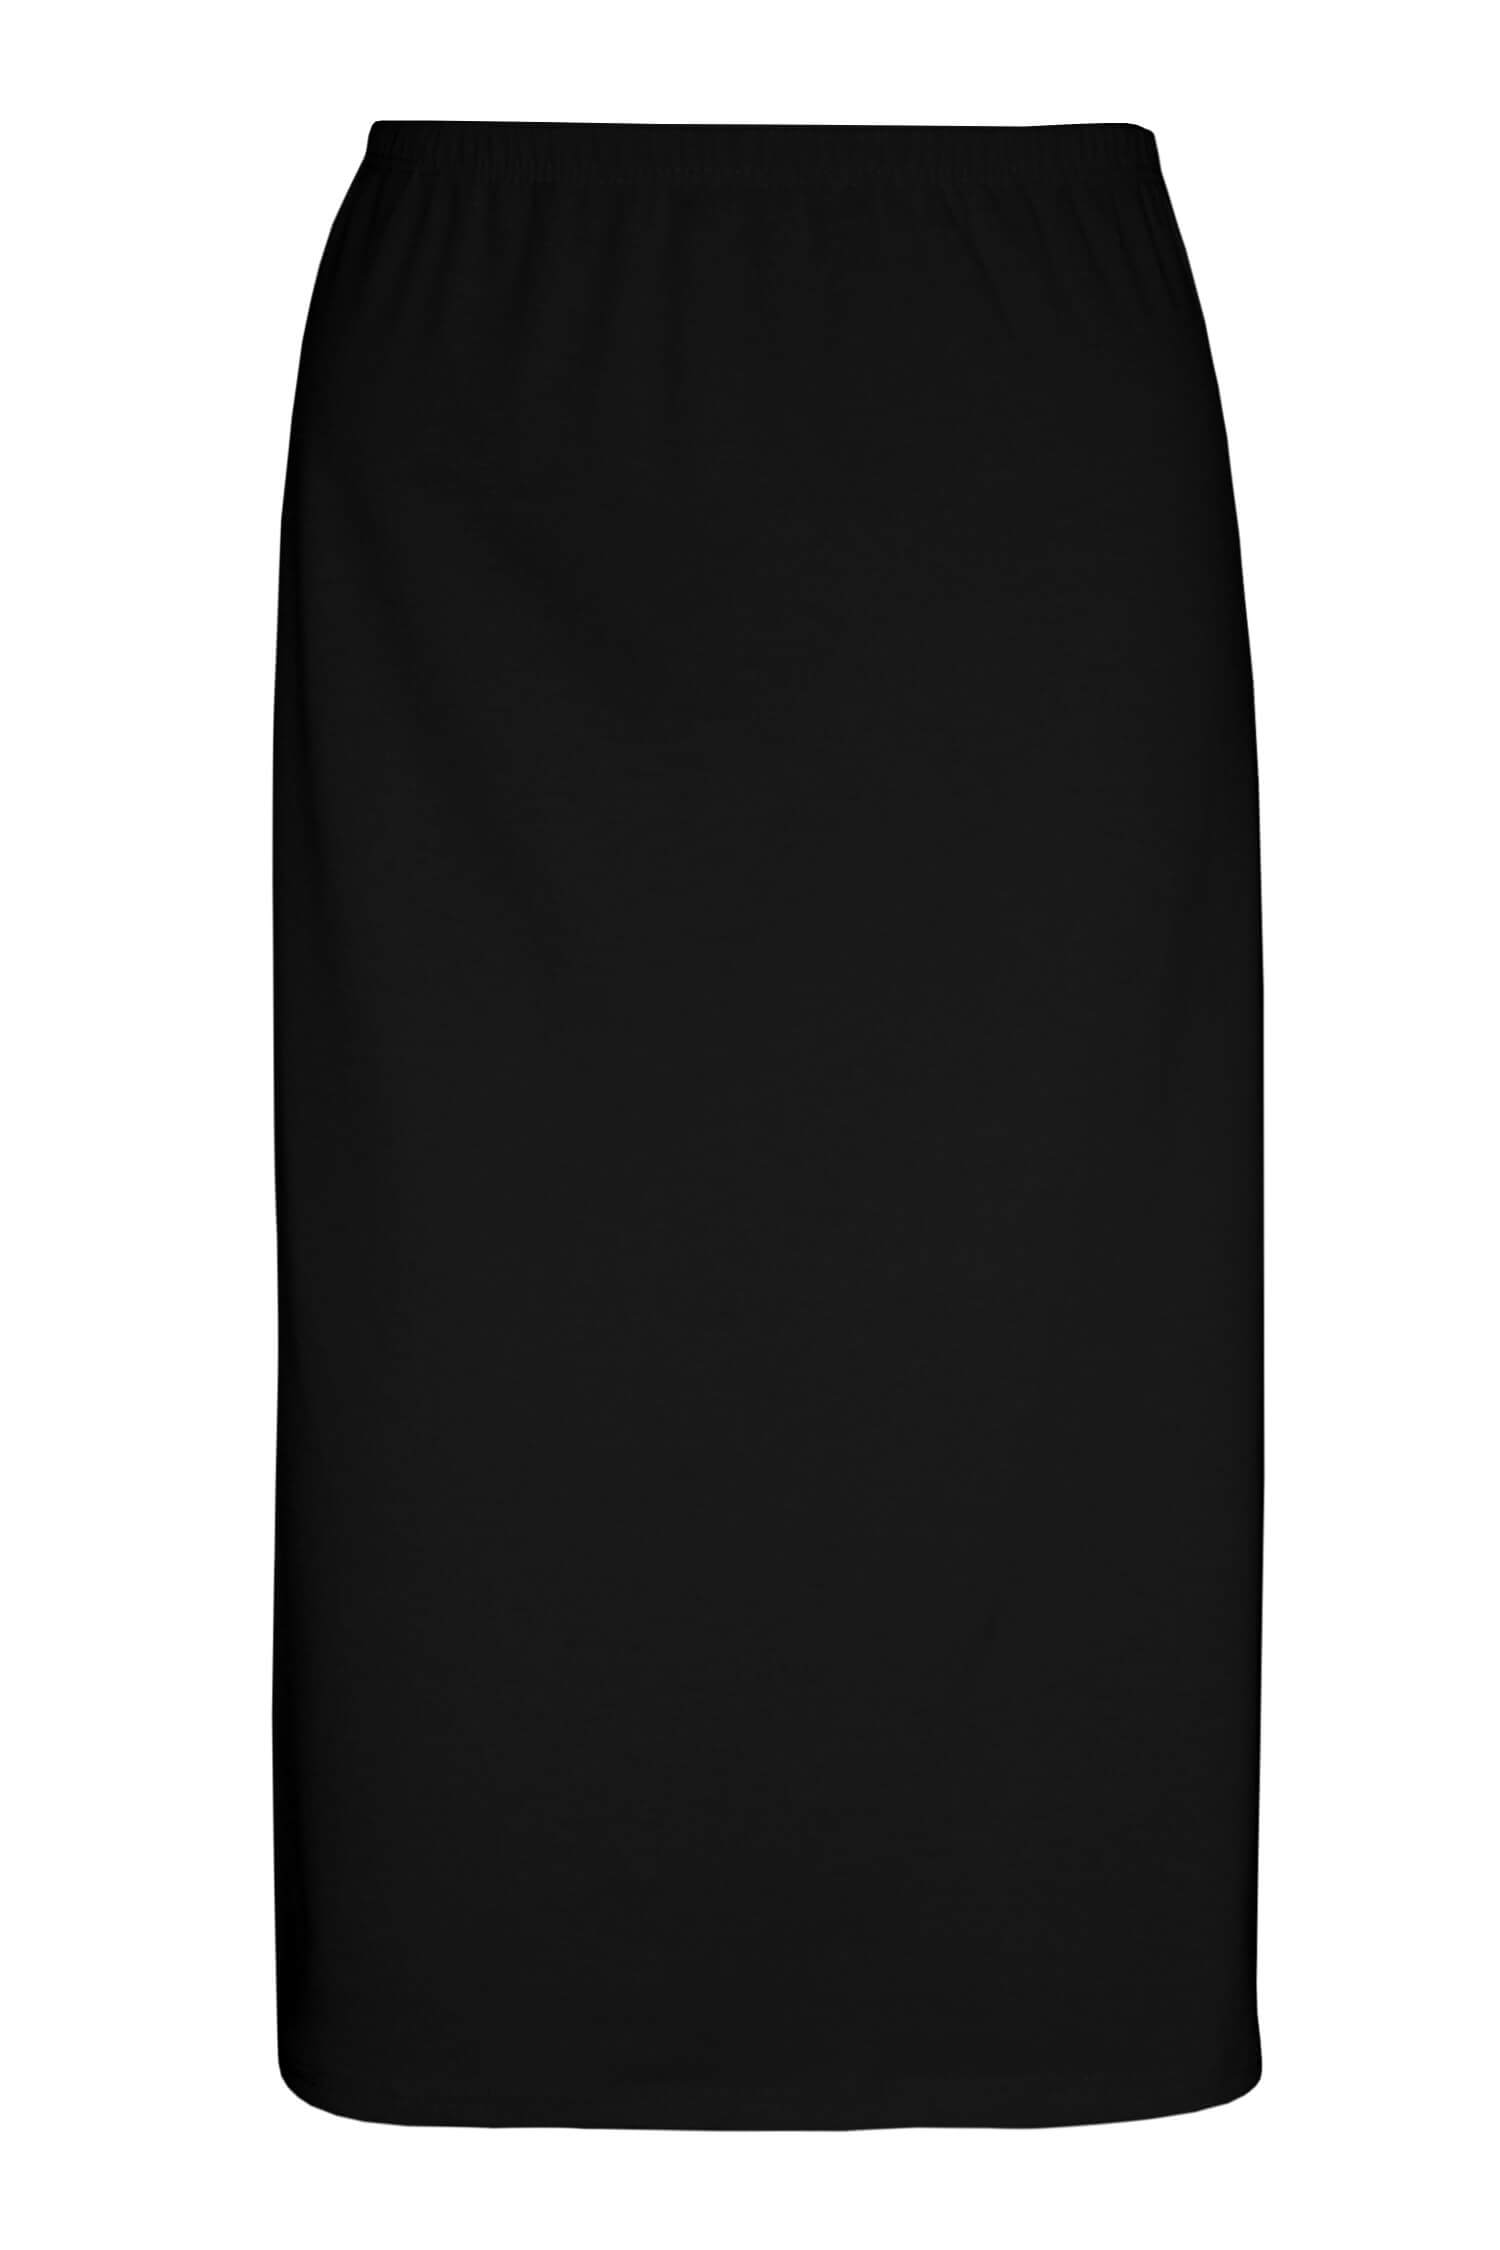 Arnoštka bavlněná spodnička - sukně 716 L černá